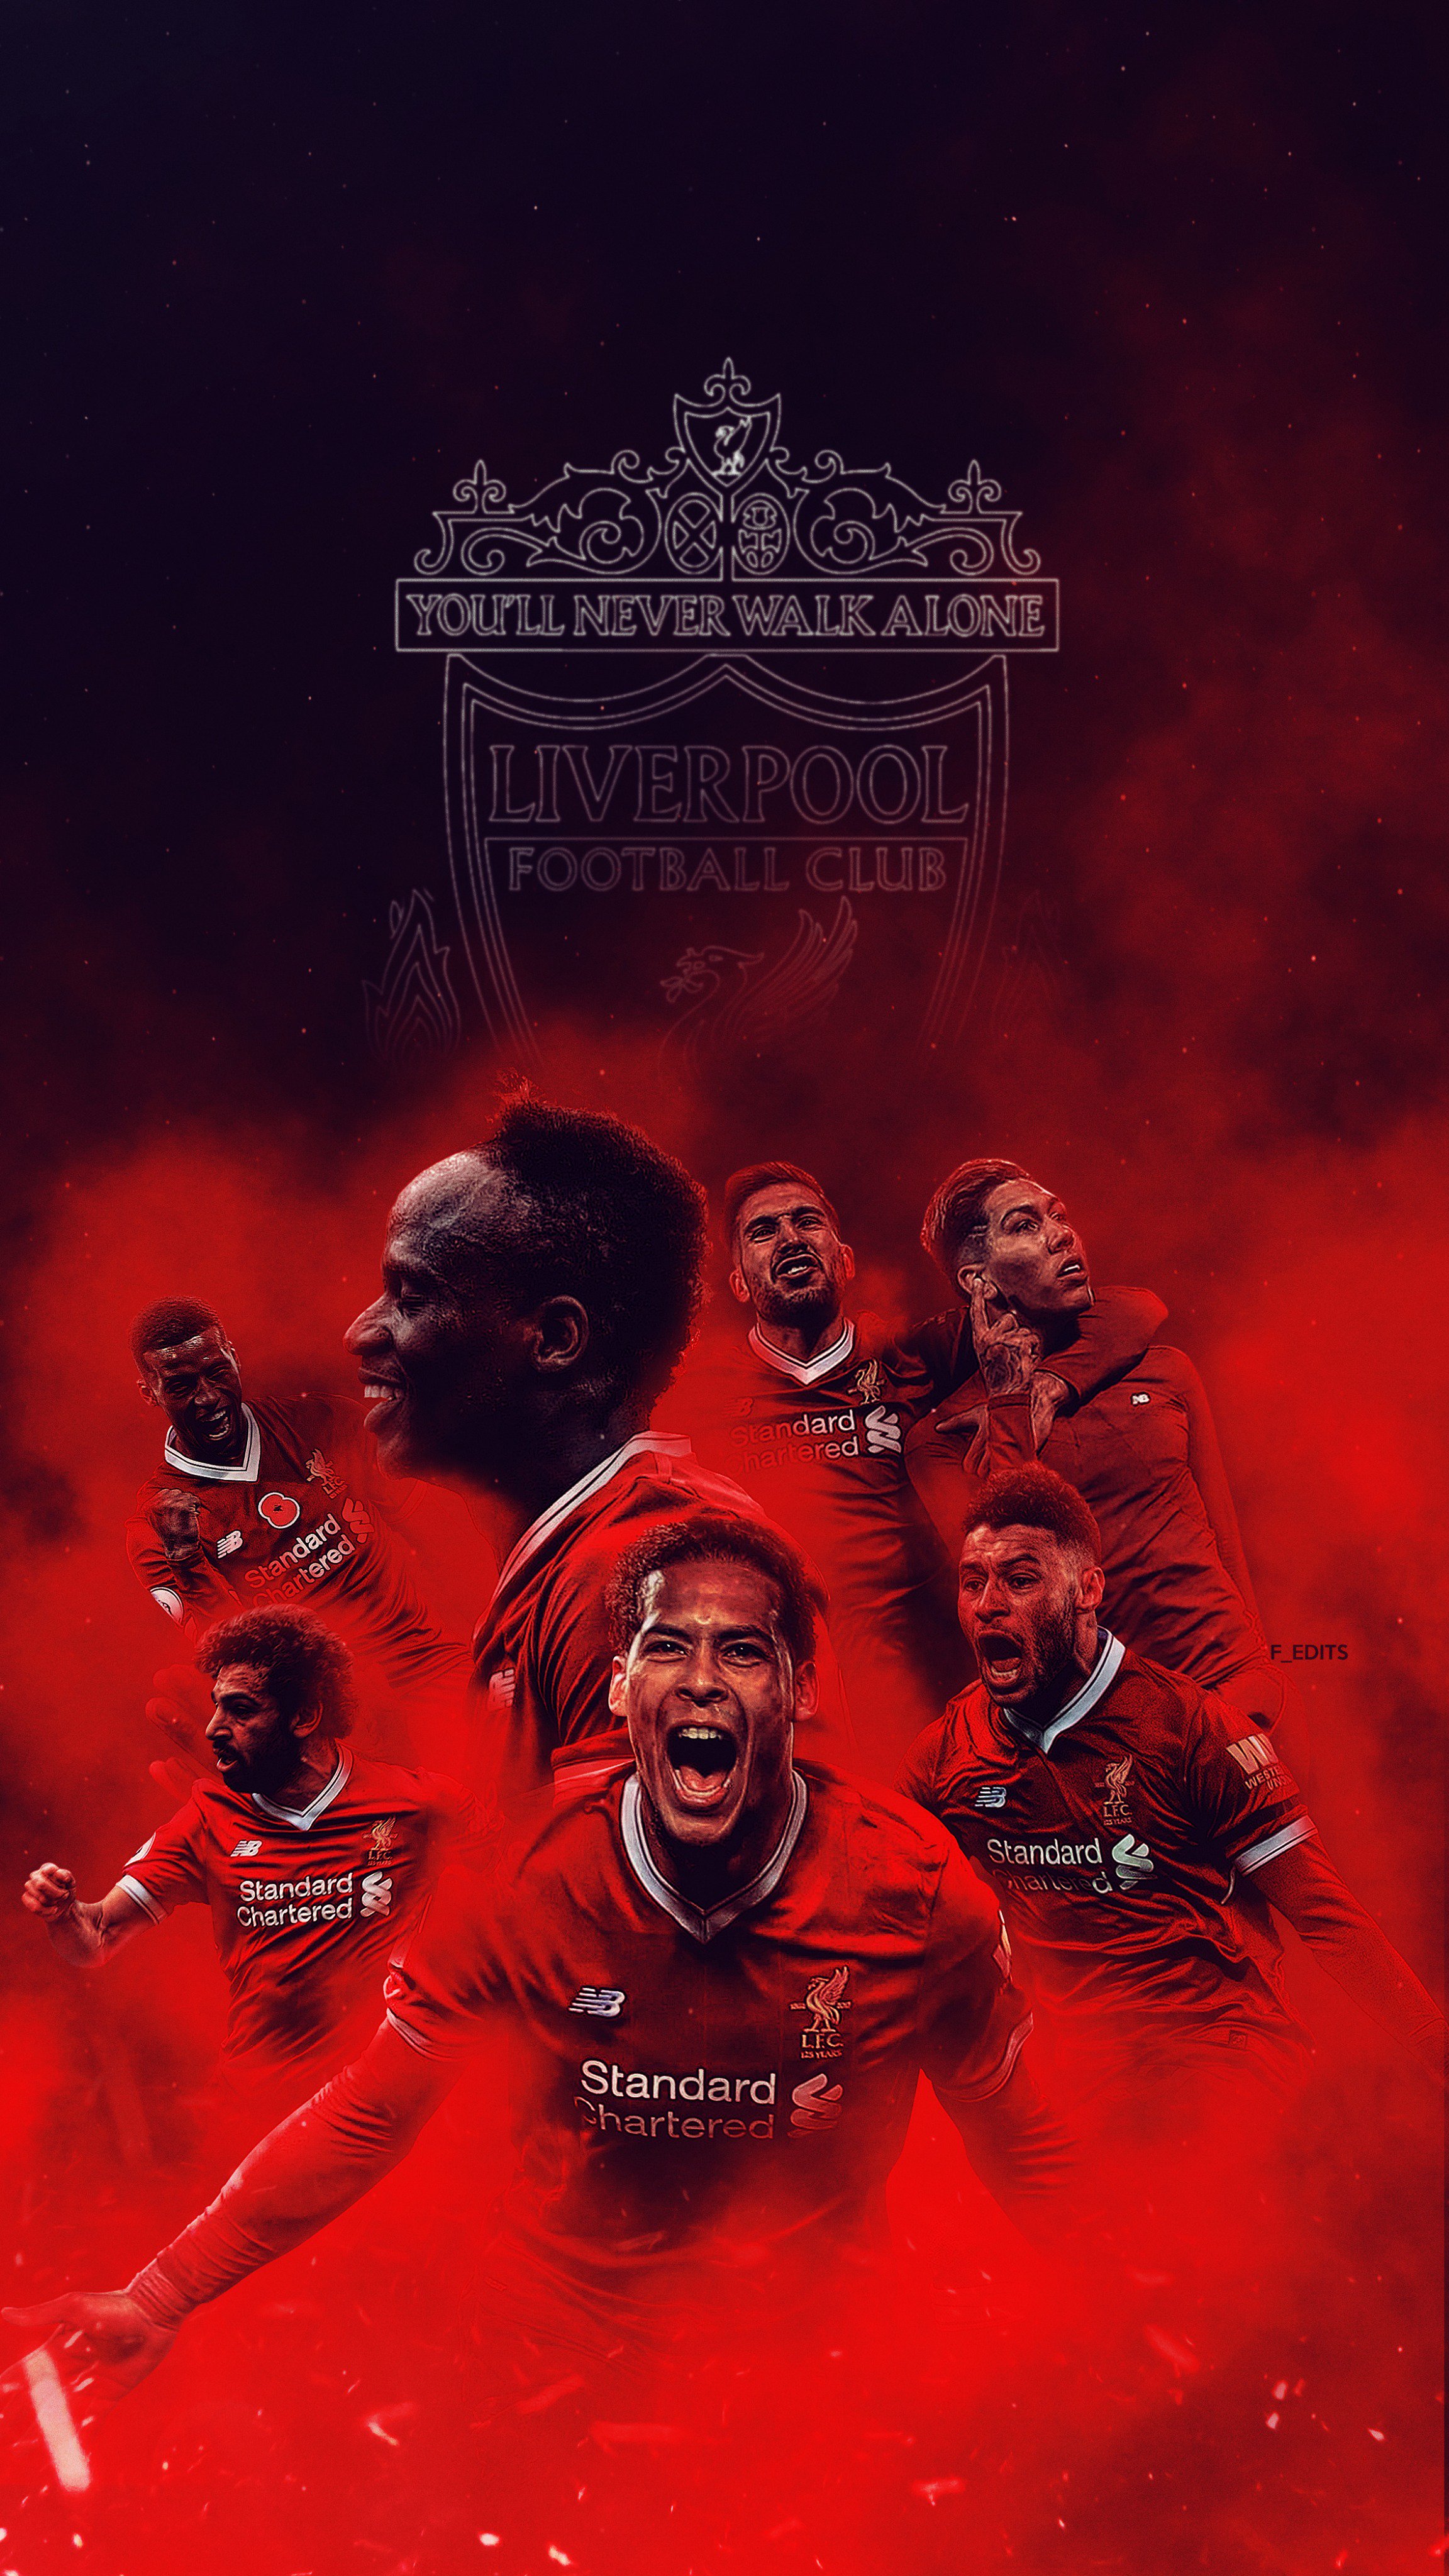 Fredrik Liverpool Football Club Wallpaper Lfc Ynwa Anfield T Co Ib4njncx8s Twitter